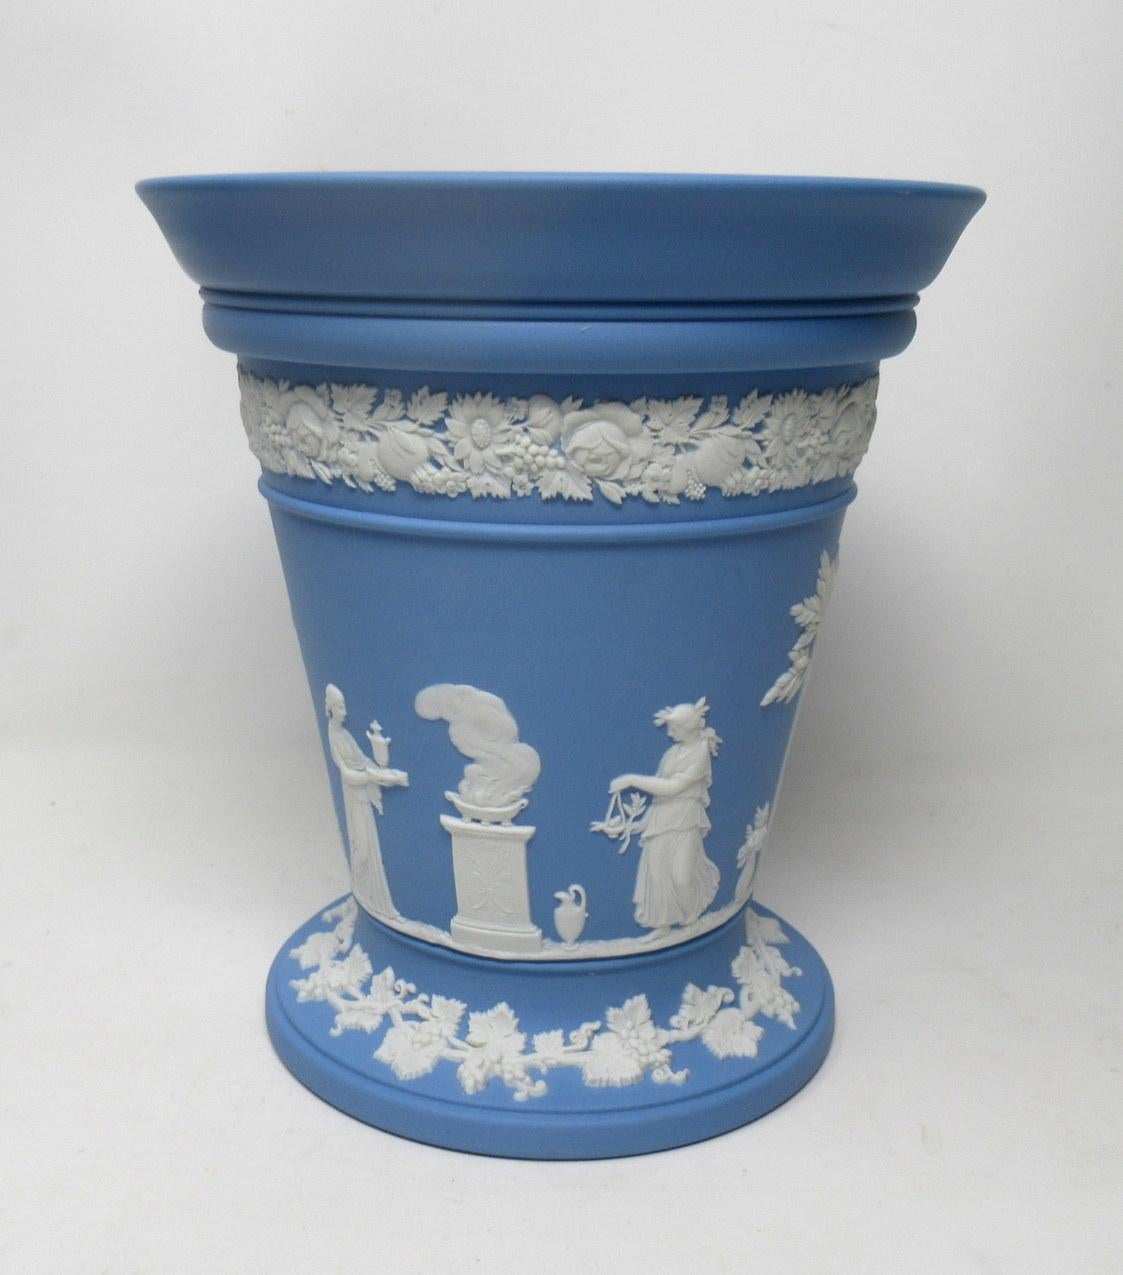 Earthenware Antique Blue Wedgwood Jasper Ware Vases Urns Mythological Classical Scenes Set 4